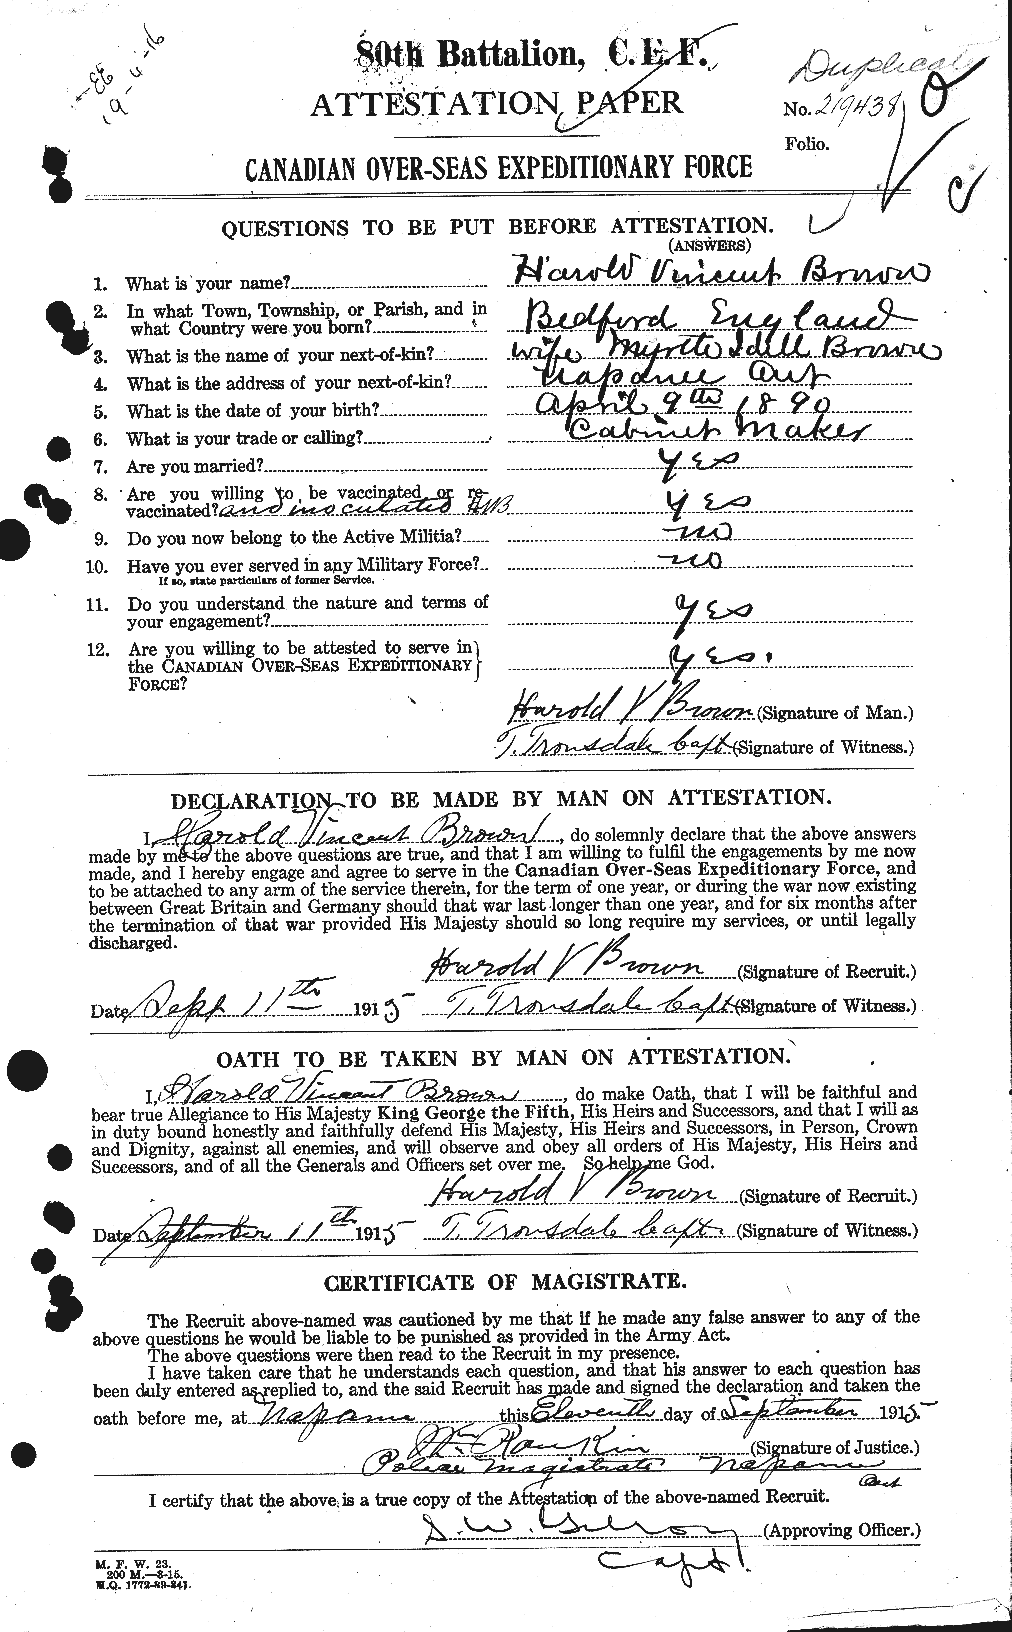 Dossiers du Personnel de la Première Guerre mondiale - CEC 265375a